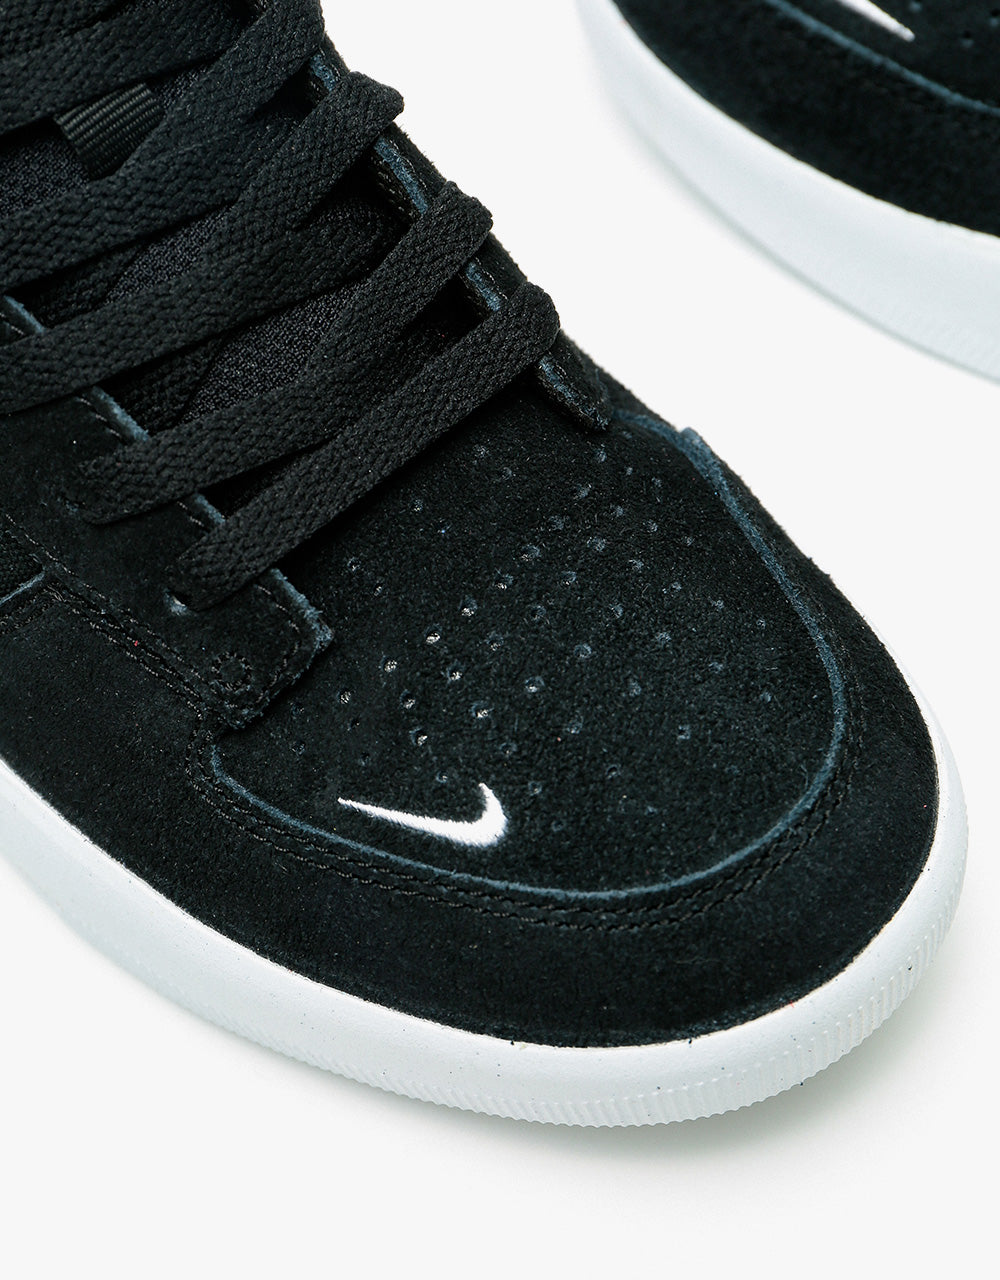 Nike SB Force 58 Skate Shoes - Black/White-Black